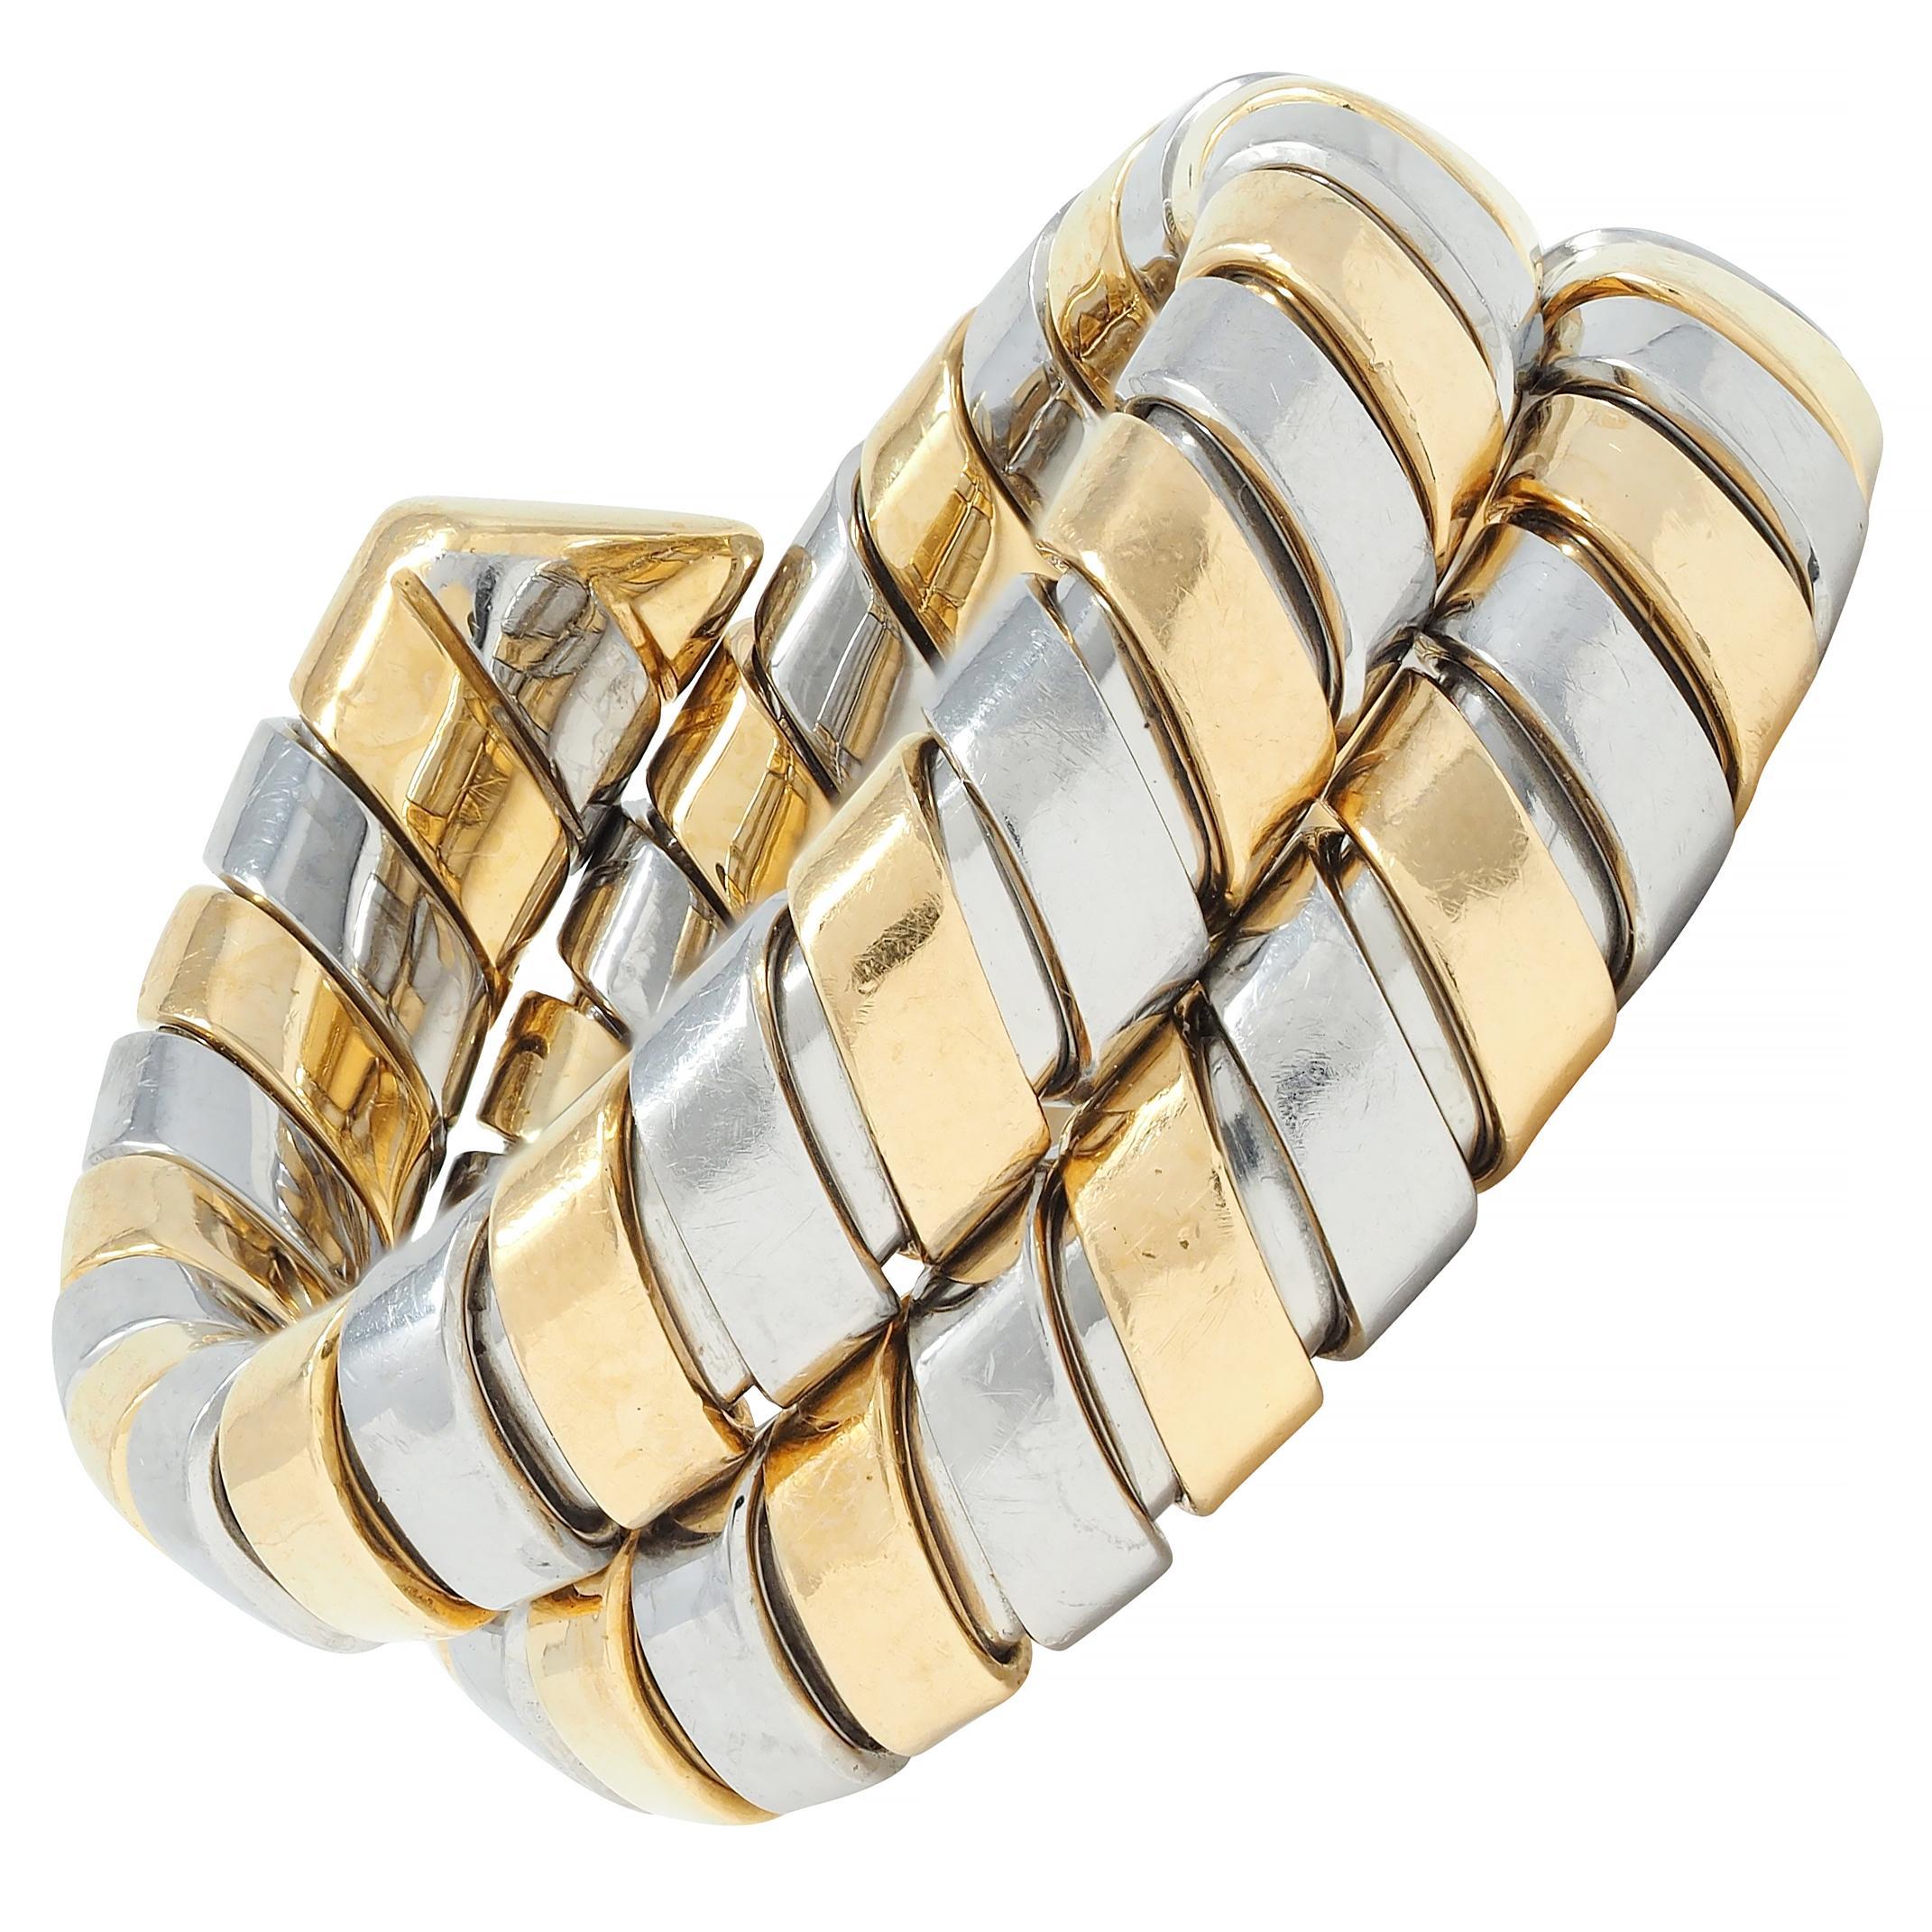 Entworfen als dreifach gewickelter Ring, der aus segmentierten Tubogas besteht
Segmente aus hochglanzpoliertem Edelstahl und Gelbgold 
Mit beträchtlicher Flexibilität
Gestempelt mit italienischen Prüfzeichen für 18 Karat Gold 
Geprüft als